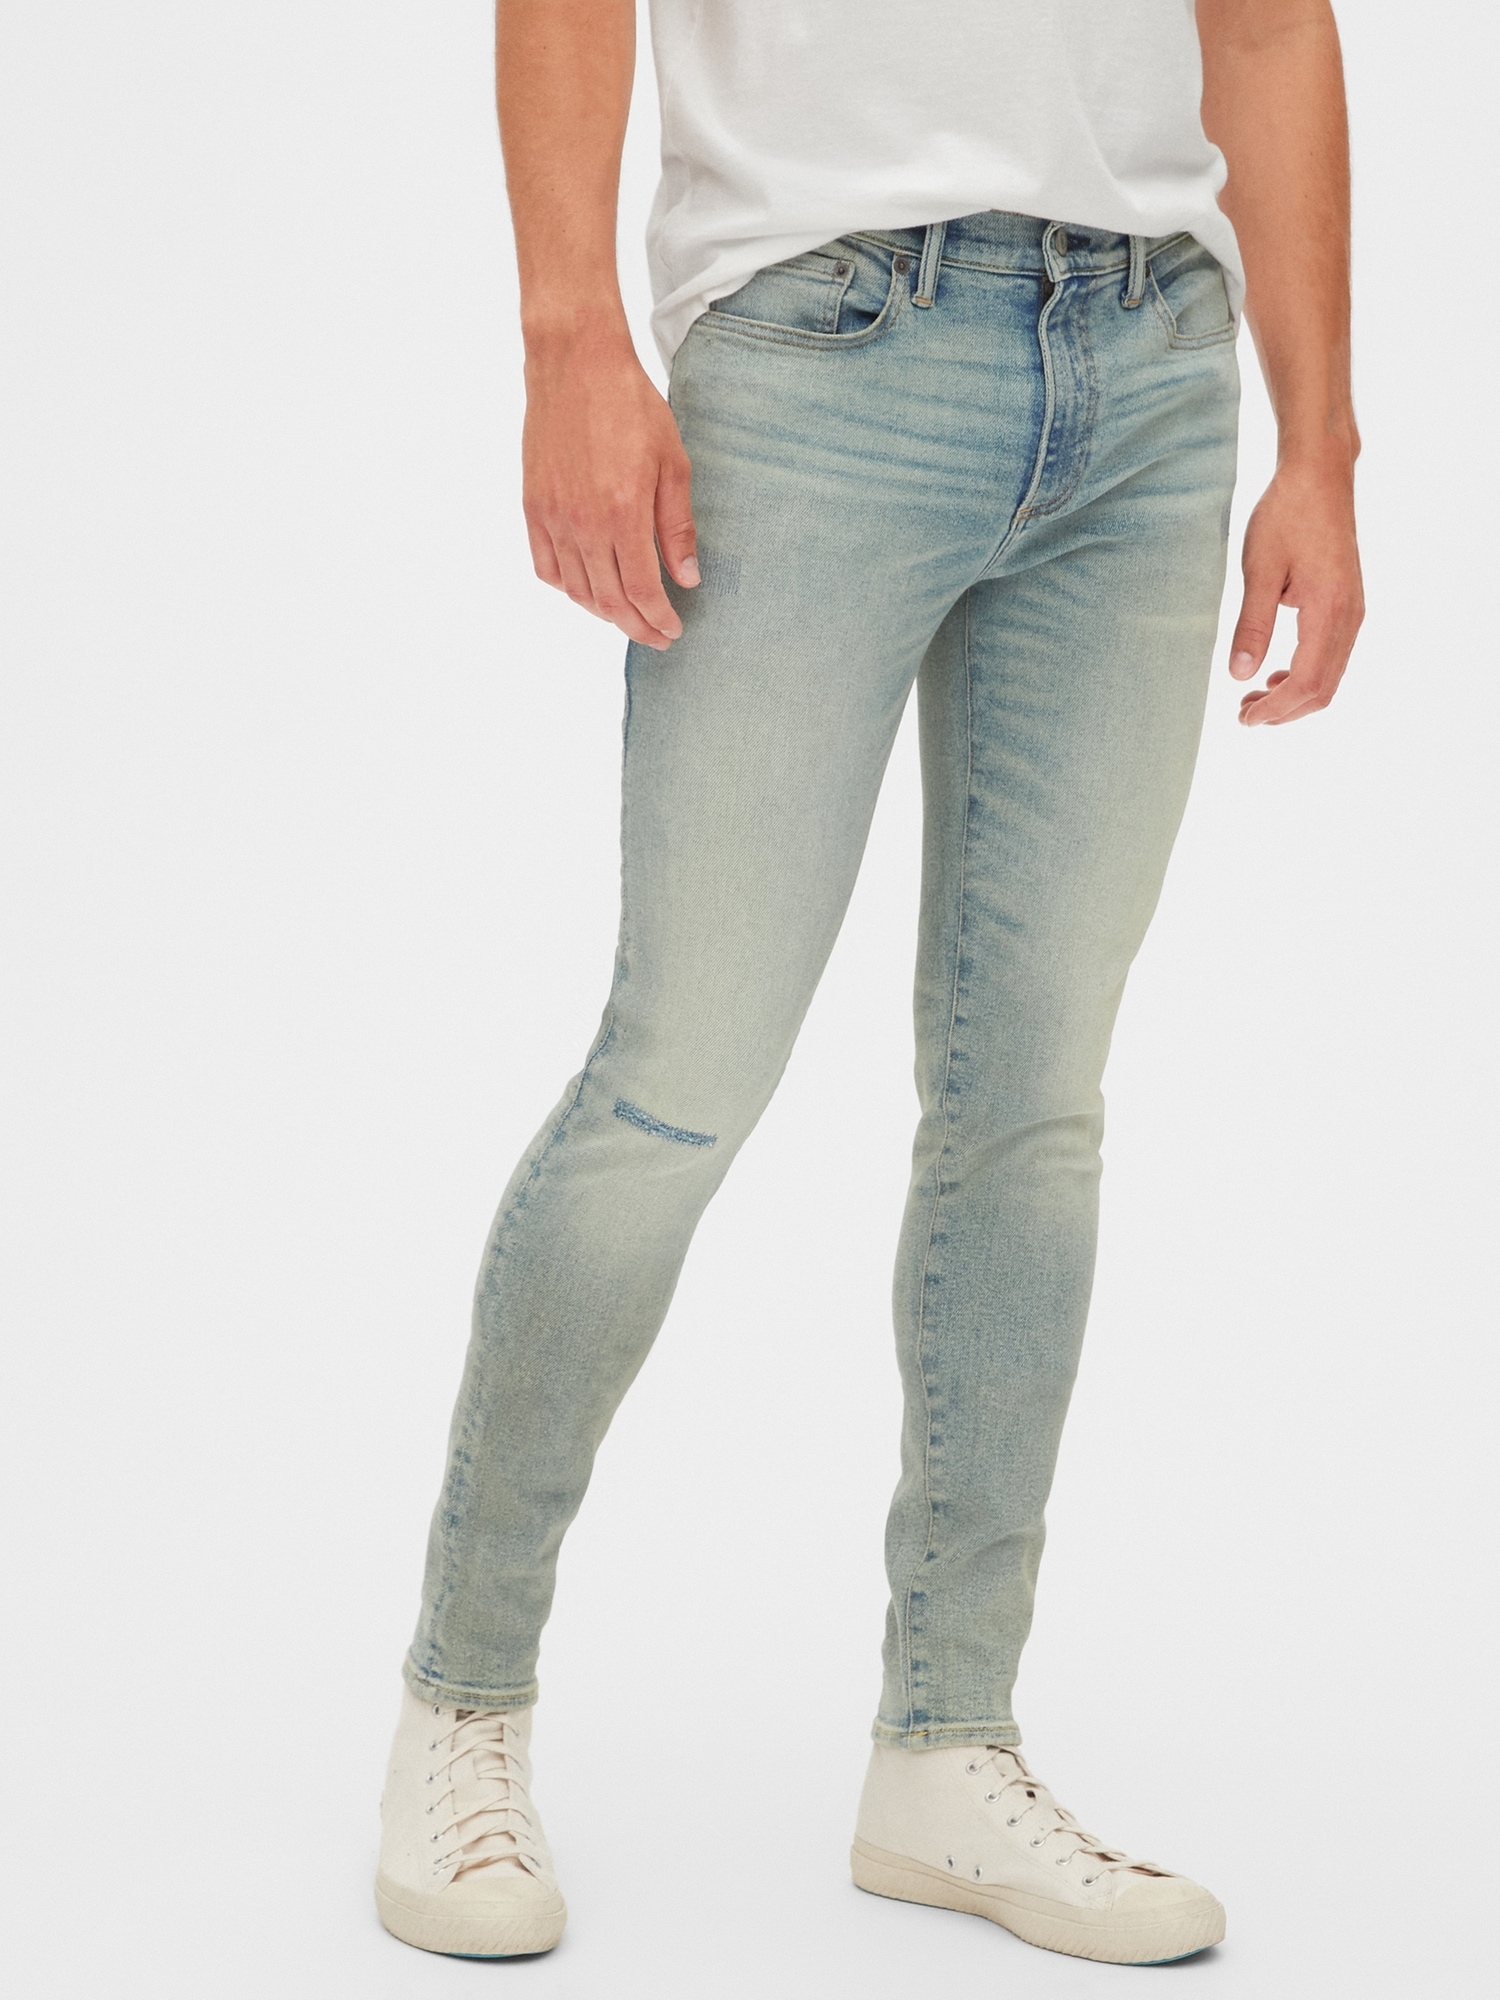 gap skinny jeans mens